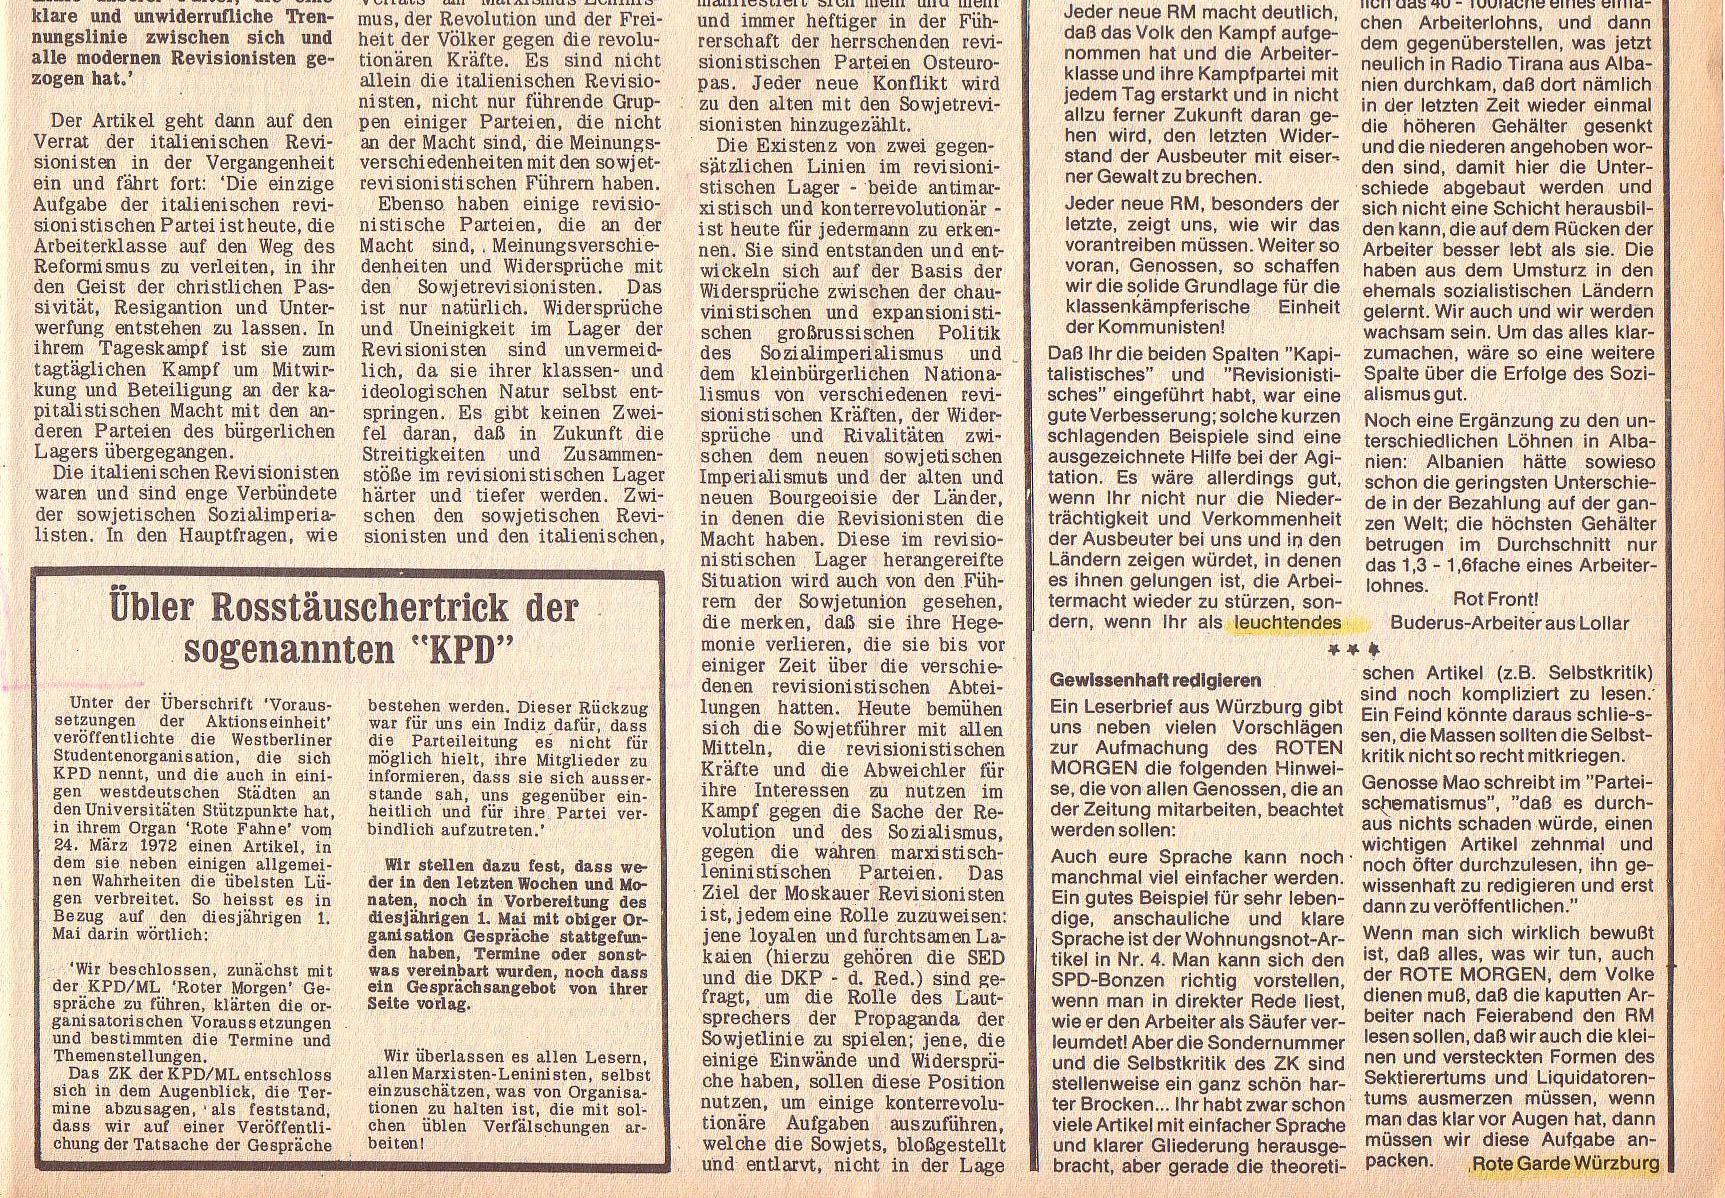 Roter Morgen, 6. Jg., 10. April 1972, Nr. 8, Seite 7b